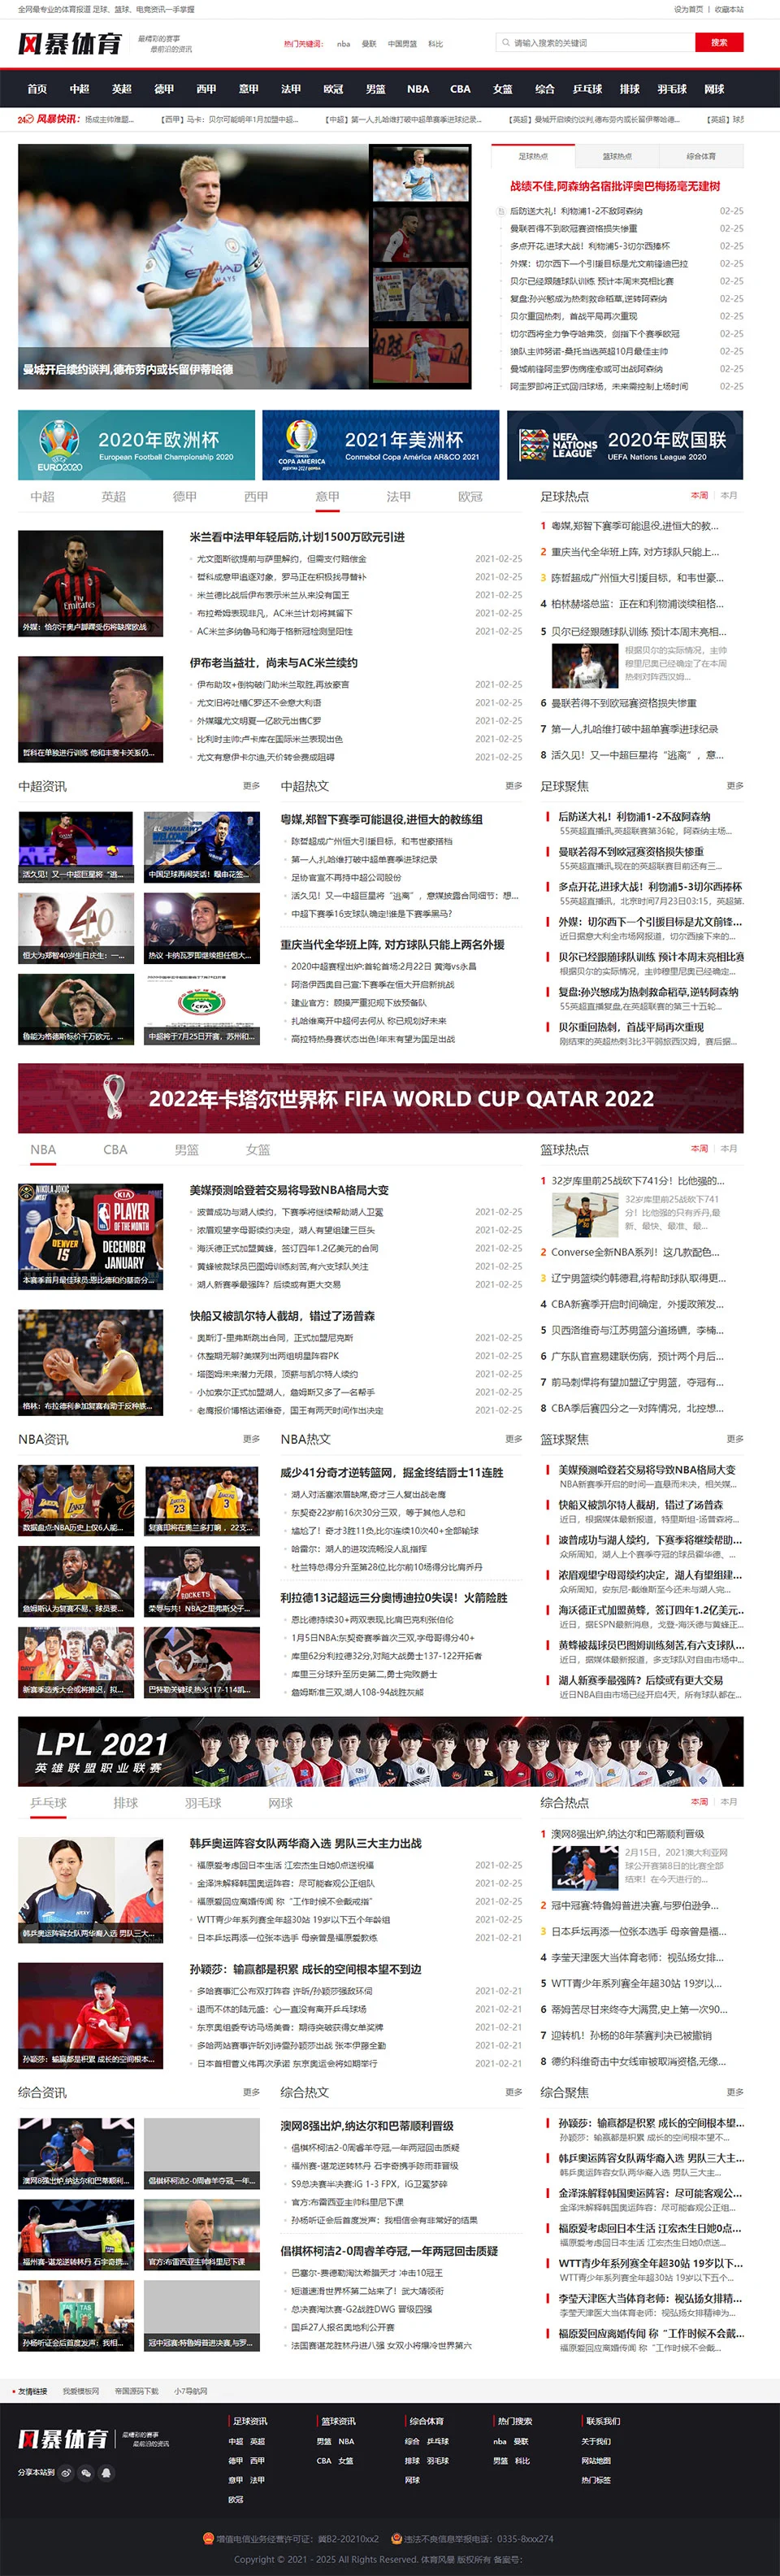 仿《风暴体育》篮球足球体育资讯网站模板 帝国cms+采集